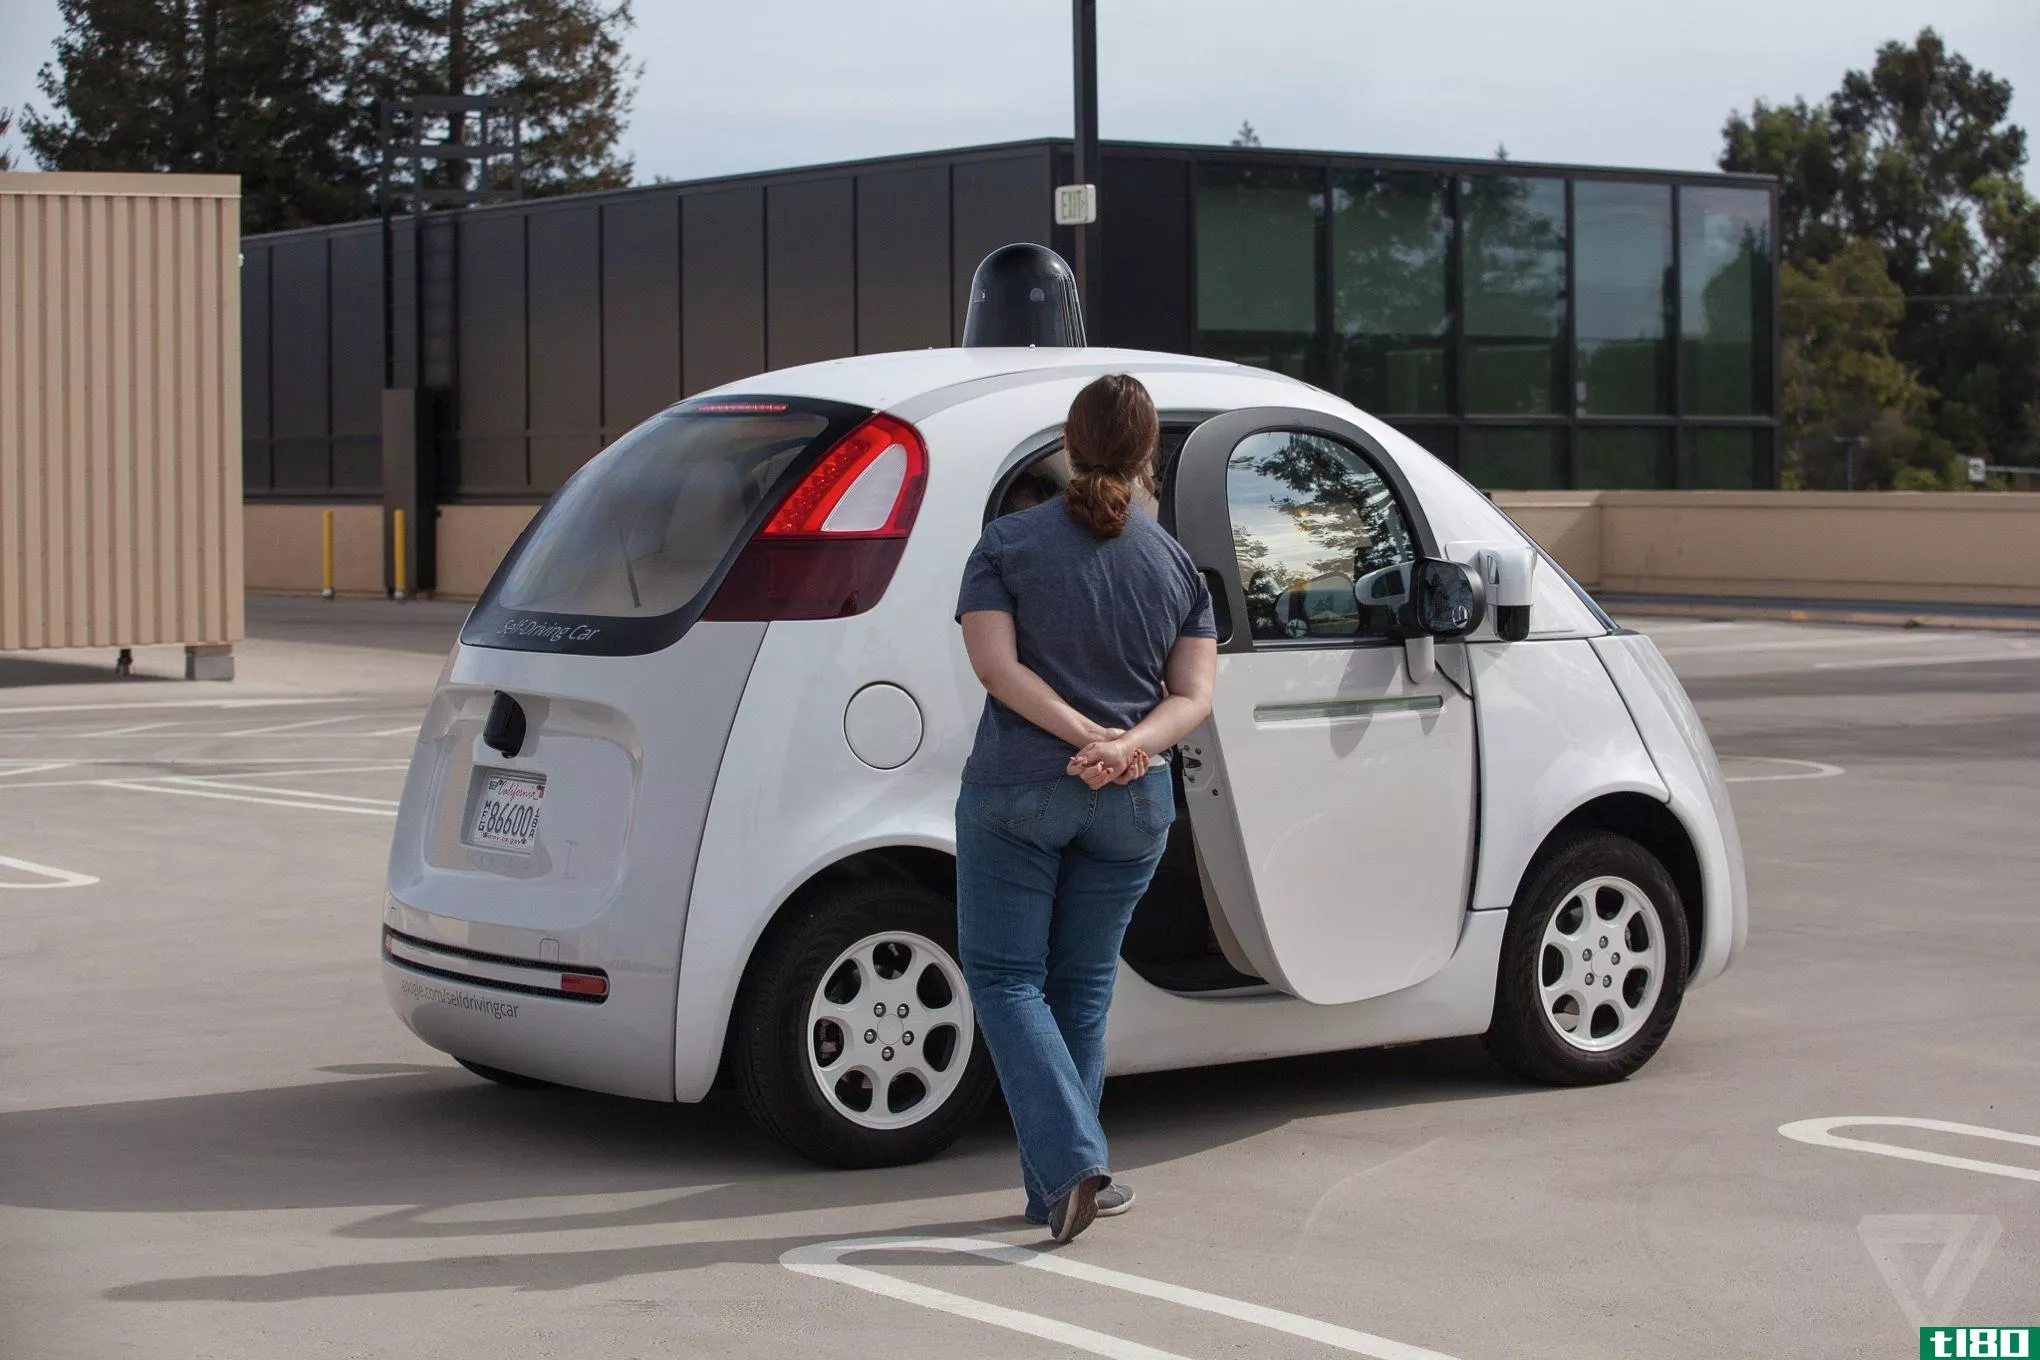 就连谷歌自动驾驶汽车的车门也有自己的专利